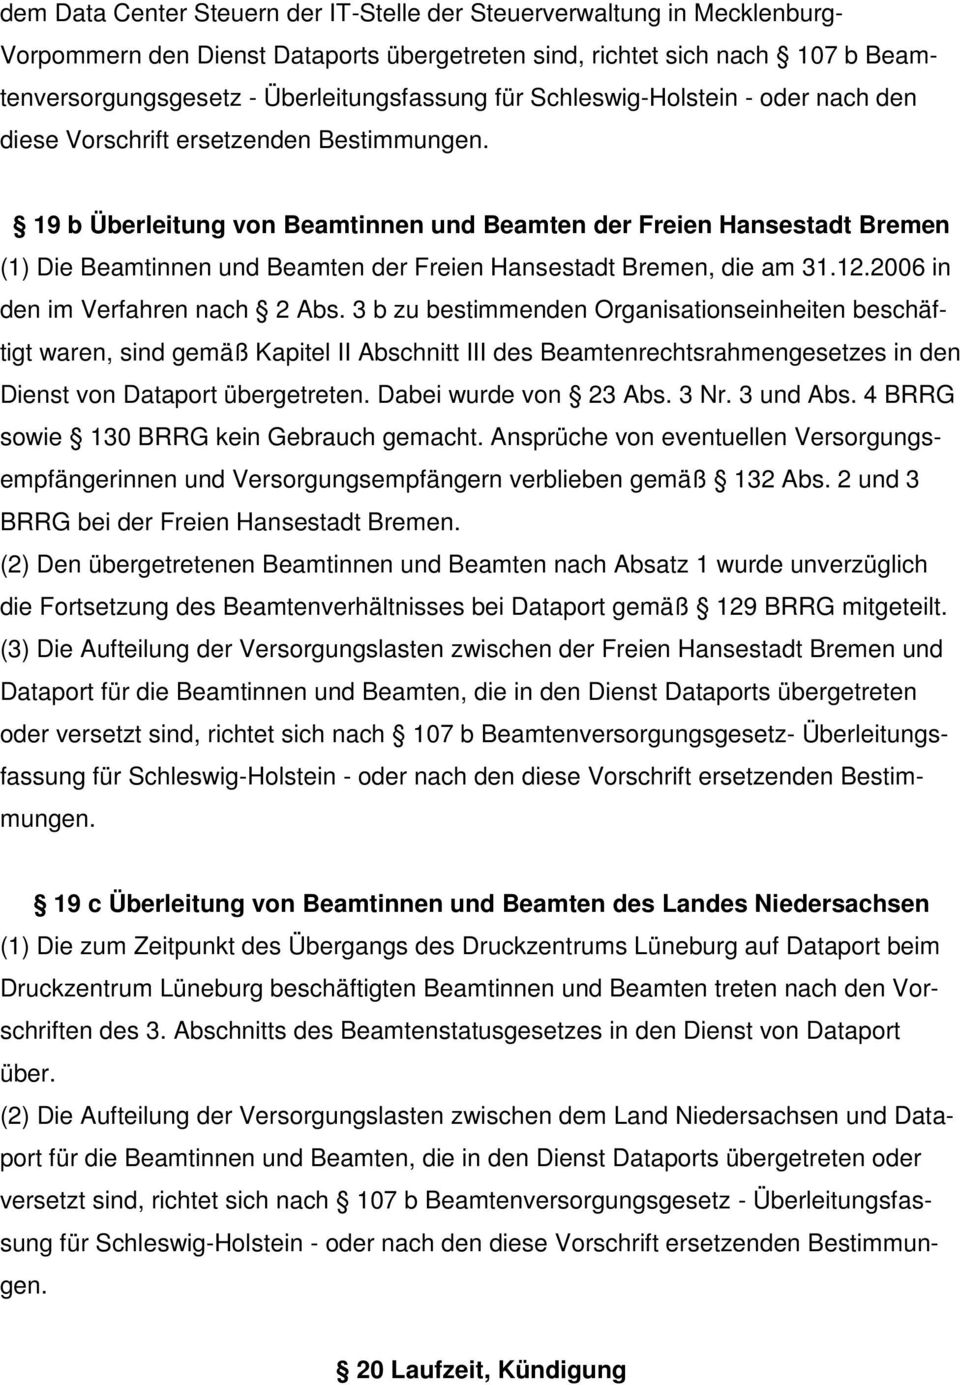 19 b Überleitung von Beamtinnen und Beamten der Freien Hansestadt Bremen (1) Die Beamtinnen und Beamten der Freien Hansestadt Bremen, die am 31.12.2006 in den im Verfahren nach 2 Abs.